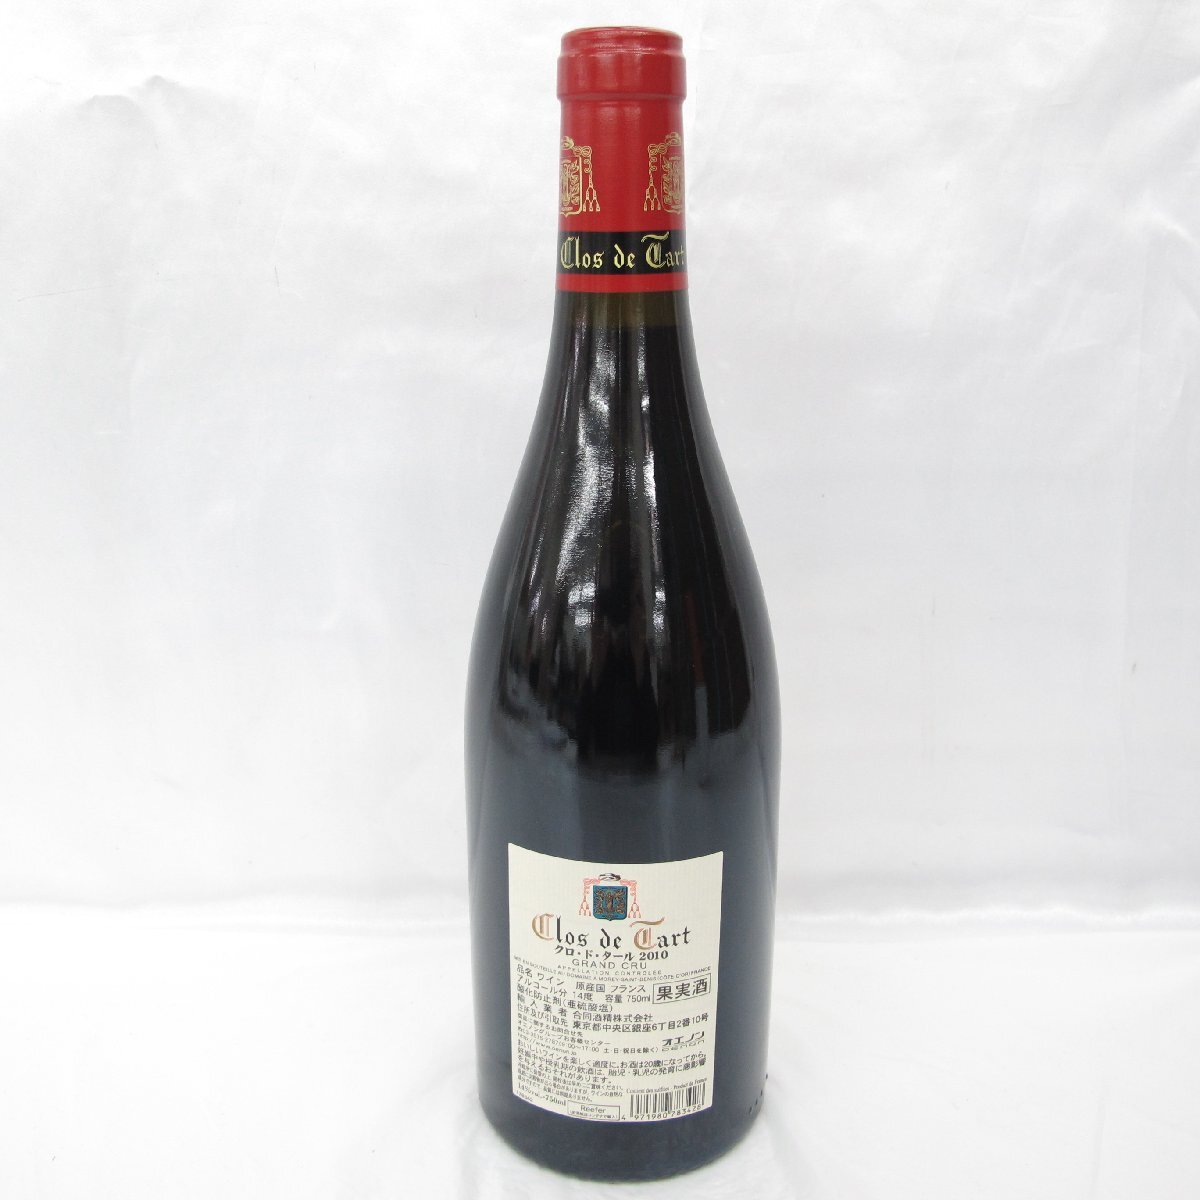 【未開栓】Mommessin Clos de Tart モメサン クロ・ド・タール グラン・クリュ 2010 赤 ワイン 720ml 14% 11539102 0406の画像3